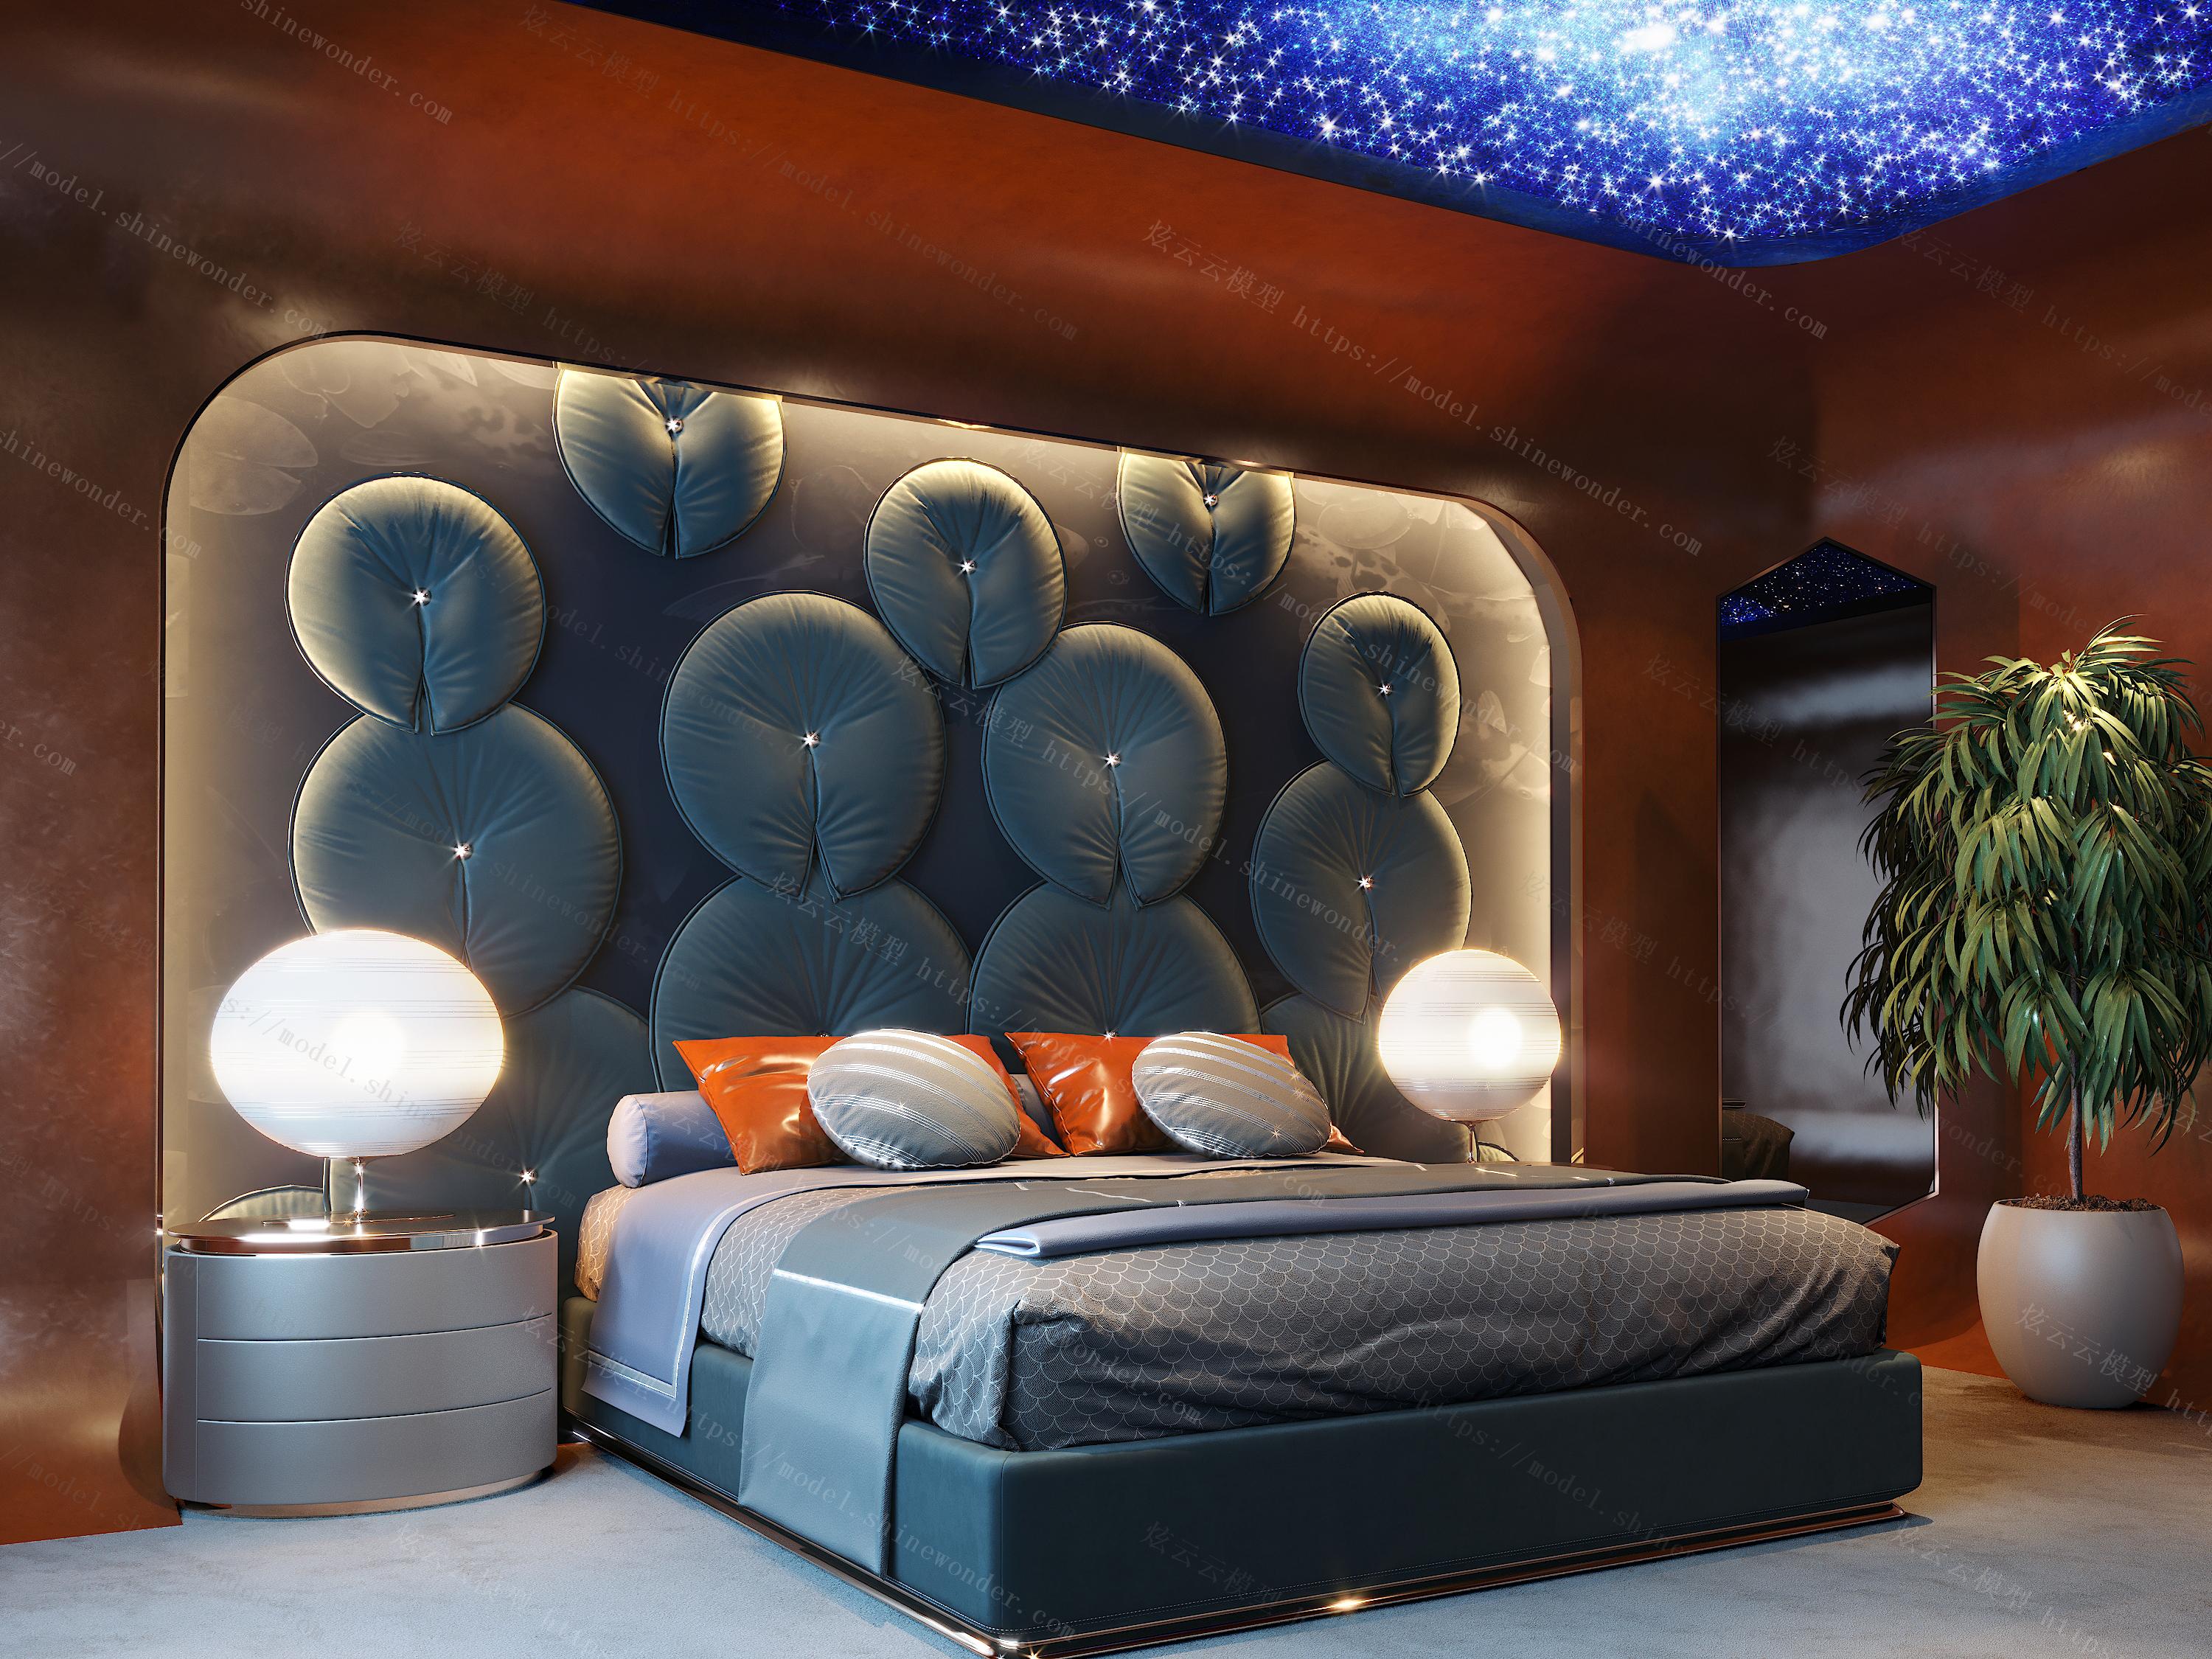 5款星空主题卧室装修设计效果图 唯美而梦幻的觉得 - 装修公司